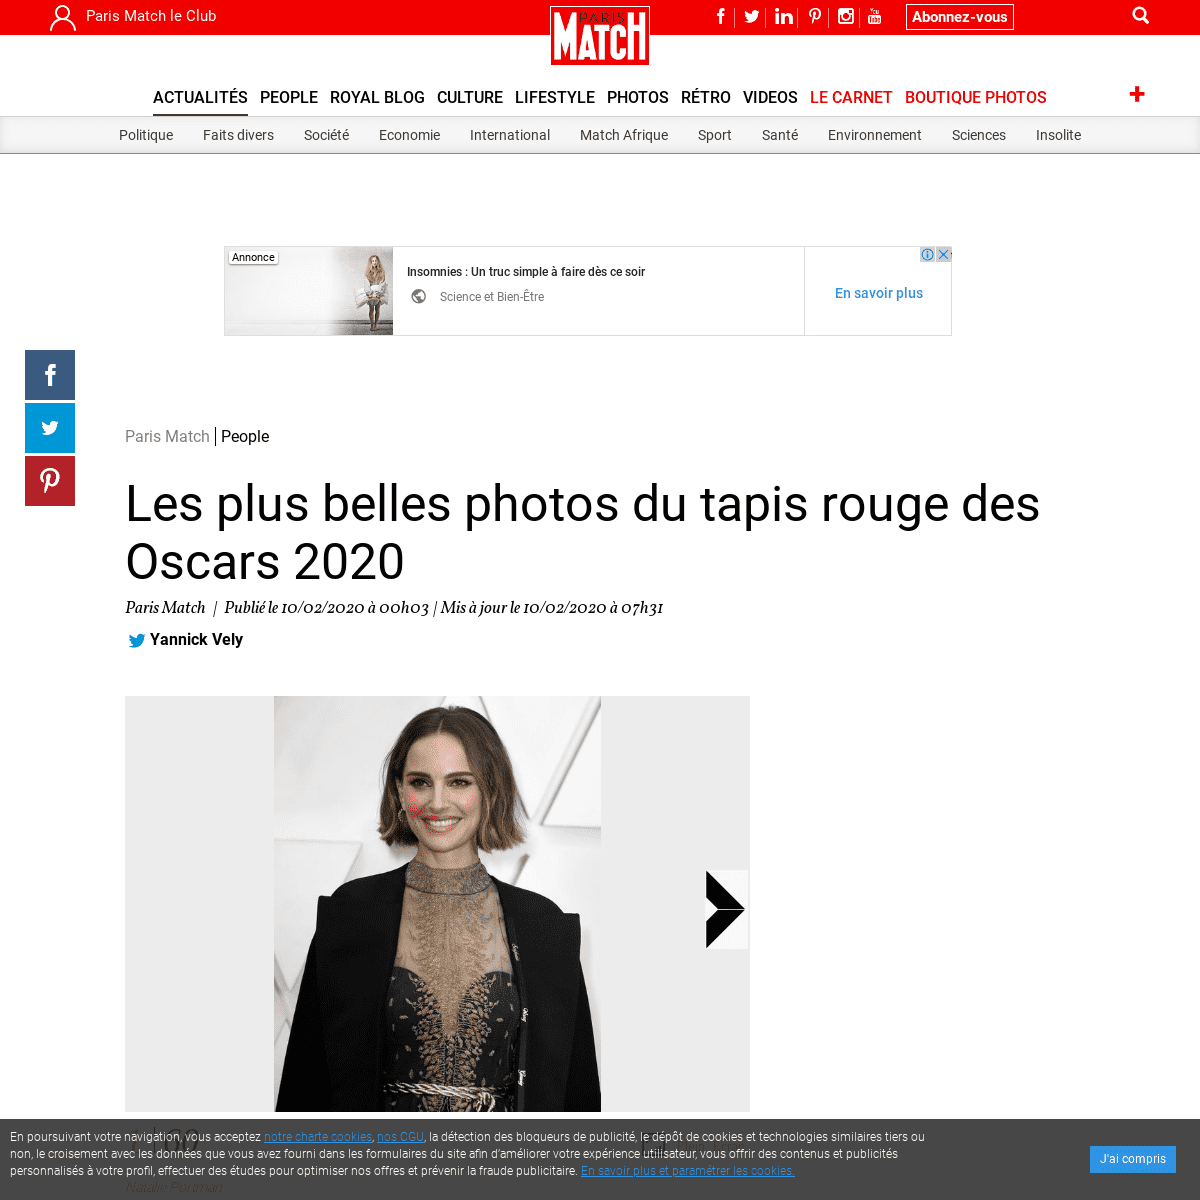 A complete backup of www.parismatch.com/People/Les-plus-belles-photos-du-tapis-rouge-des-Oscars-2020-1672865